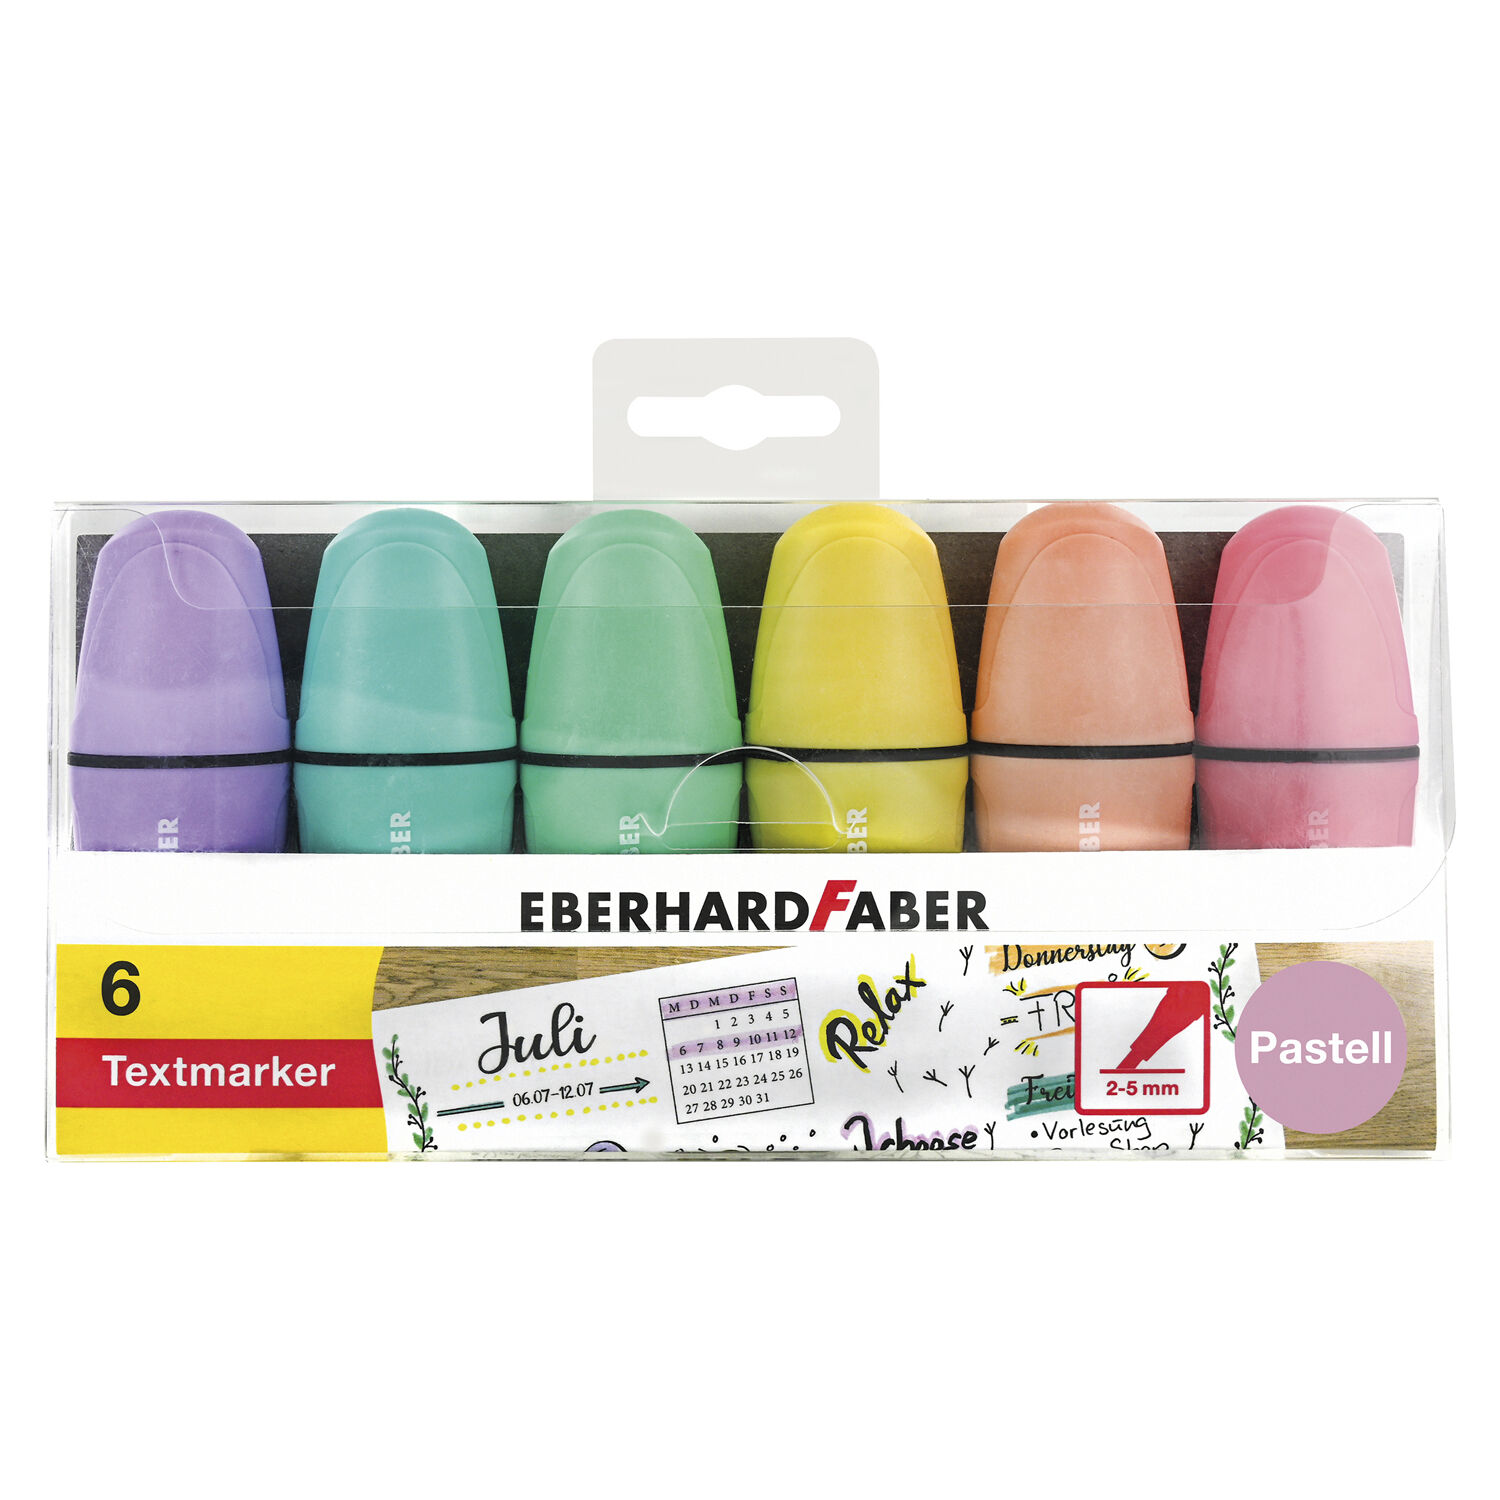 NEU Textmarker / Highlighter, Mini Pastell, 6 Farben sortiert